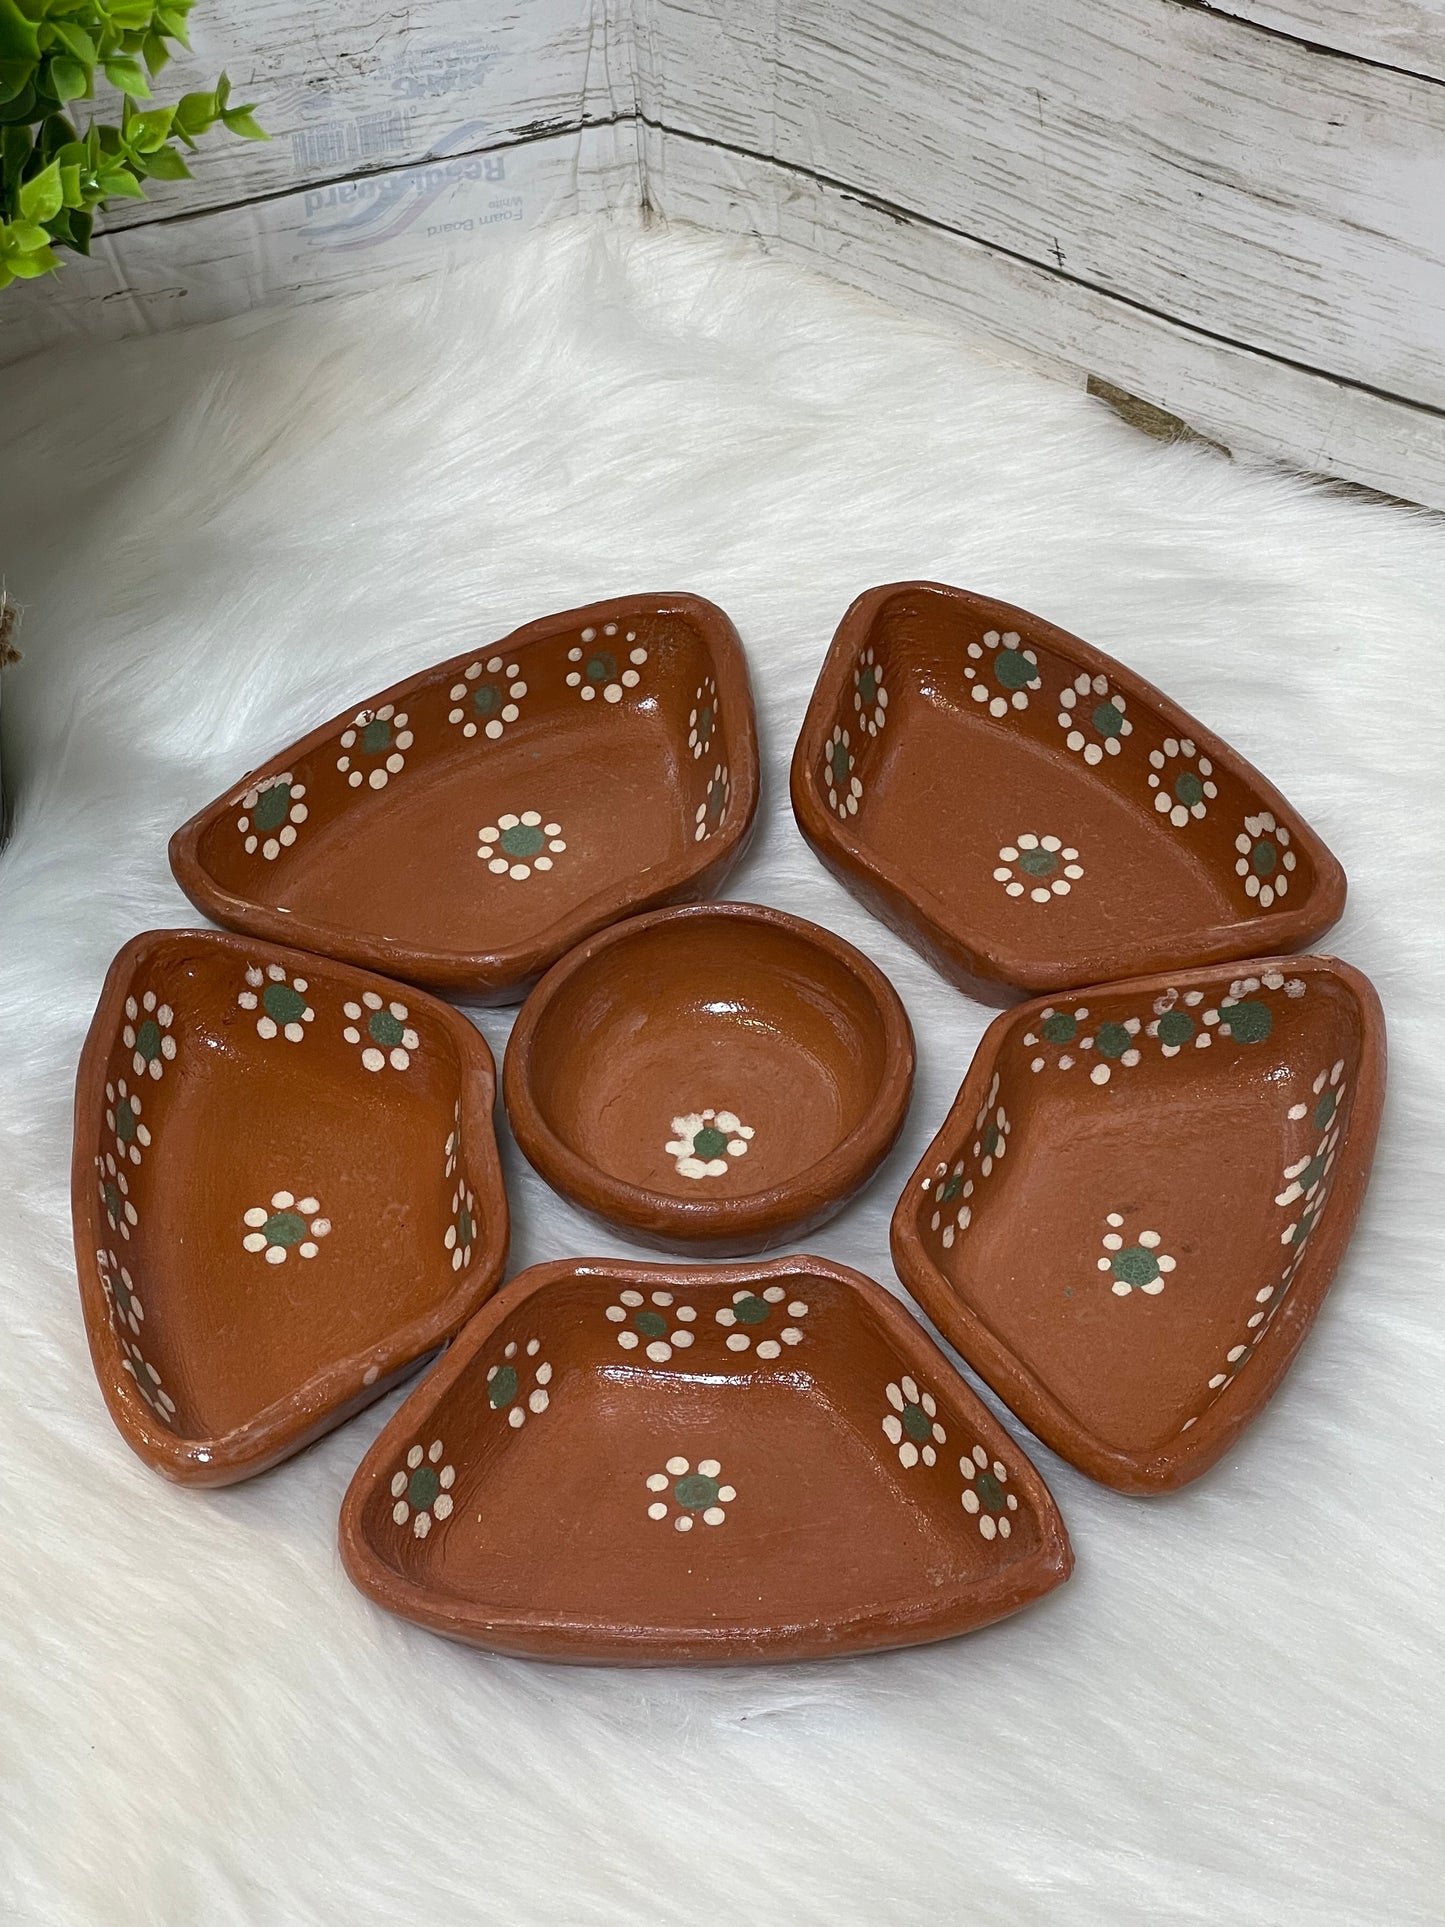 Authentic rustic Mexican snack tray gift set/ botanero rustico de barro.